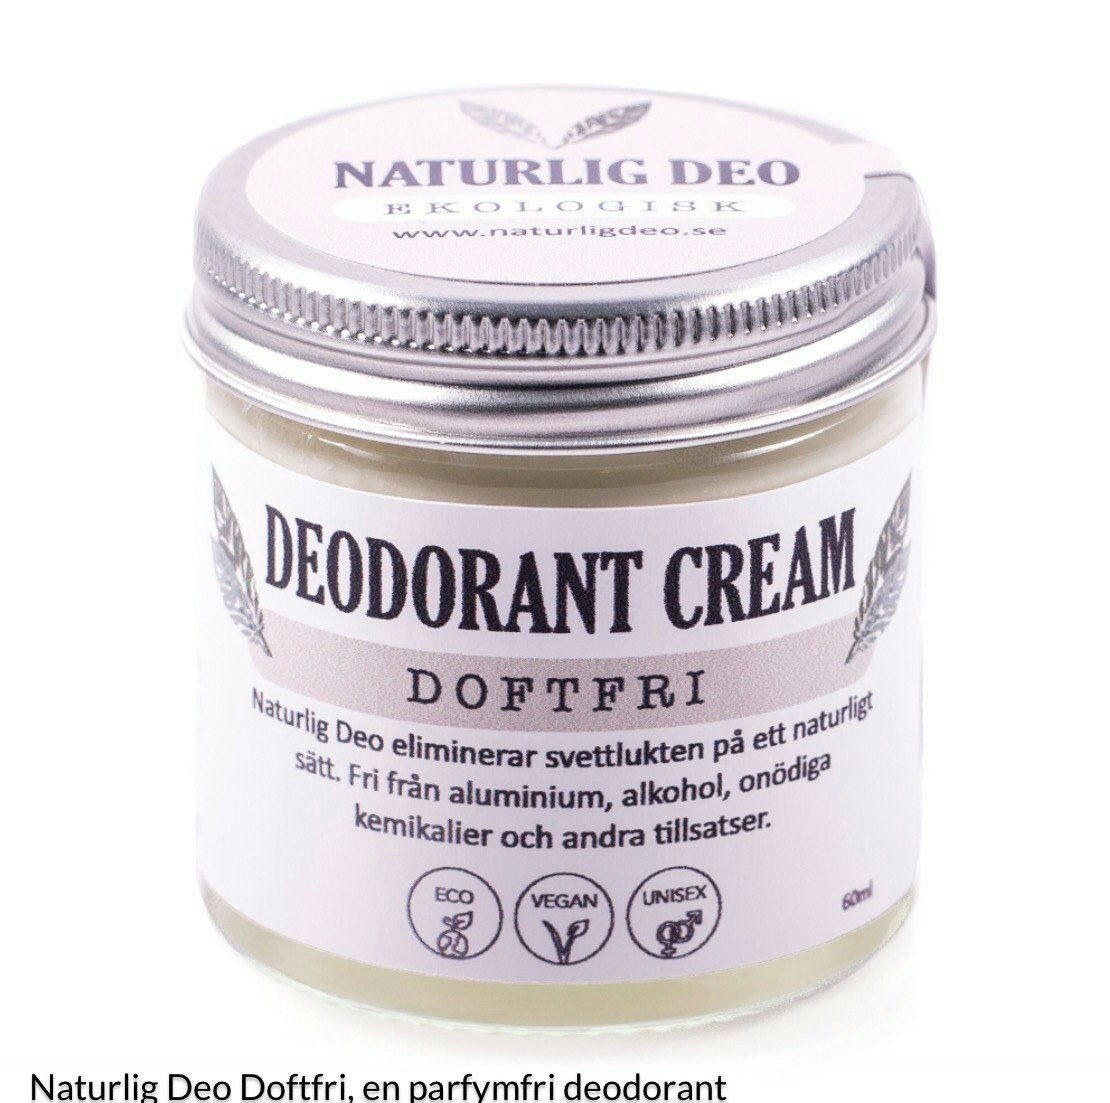 NaturligDeo Cream Doftfri - Ekologisk deodorant - Malin i Ratan